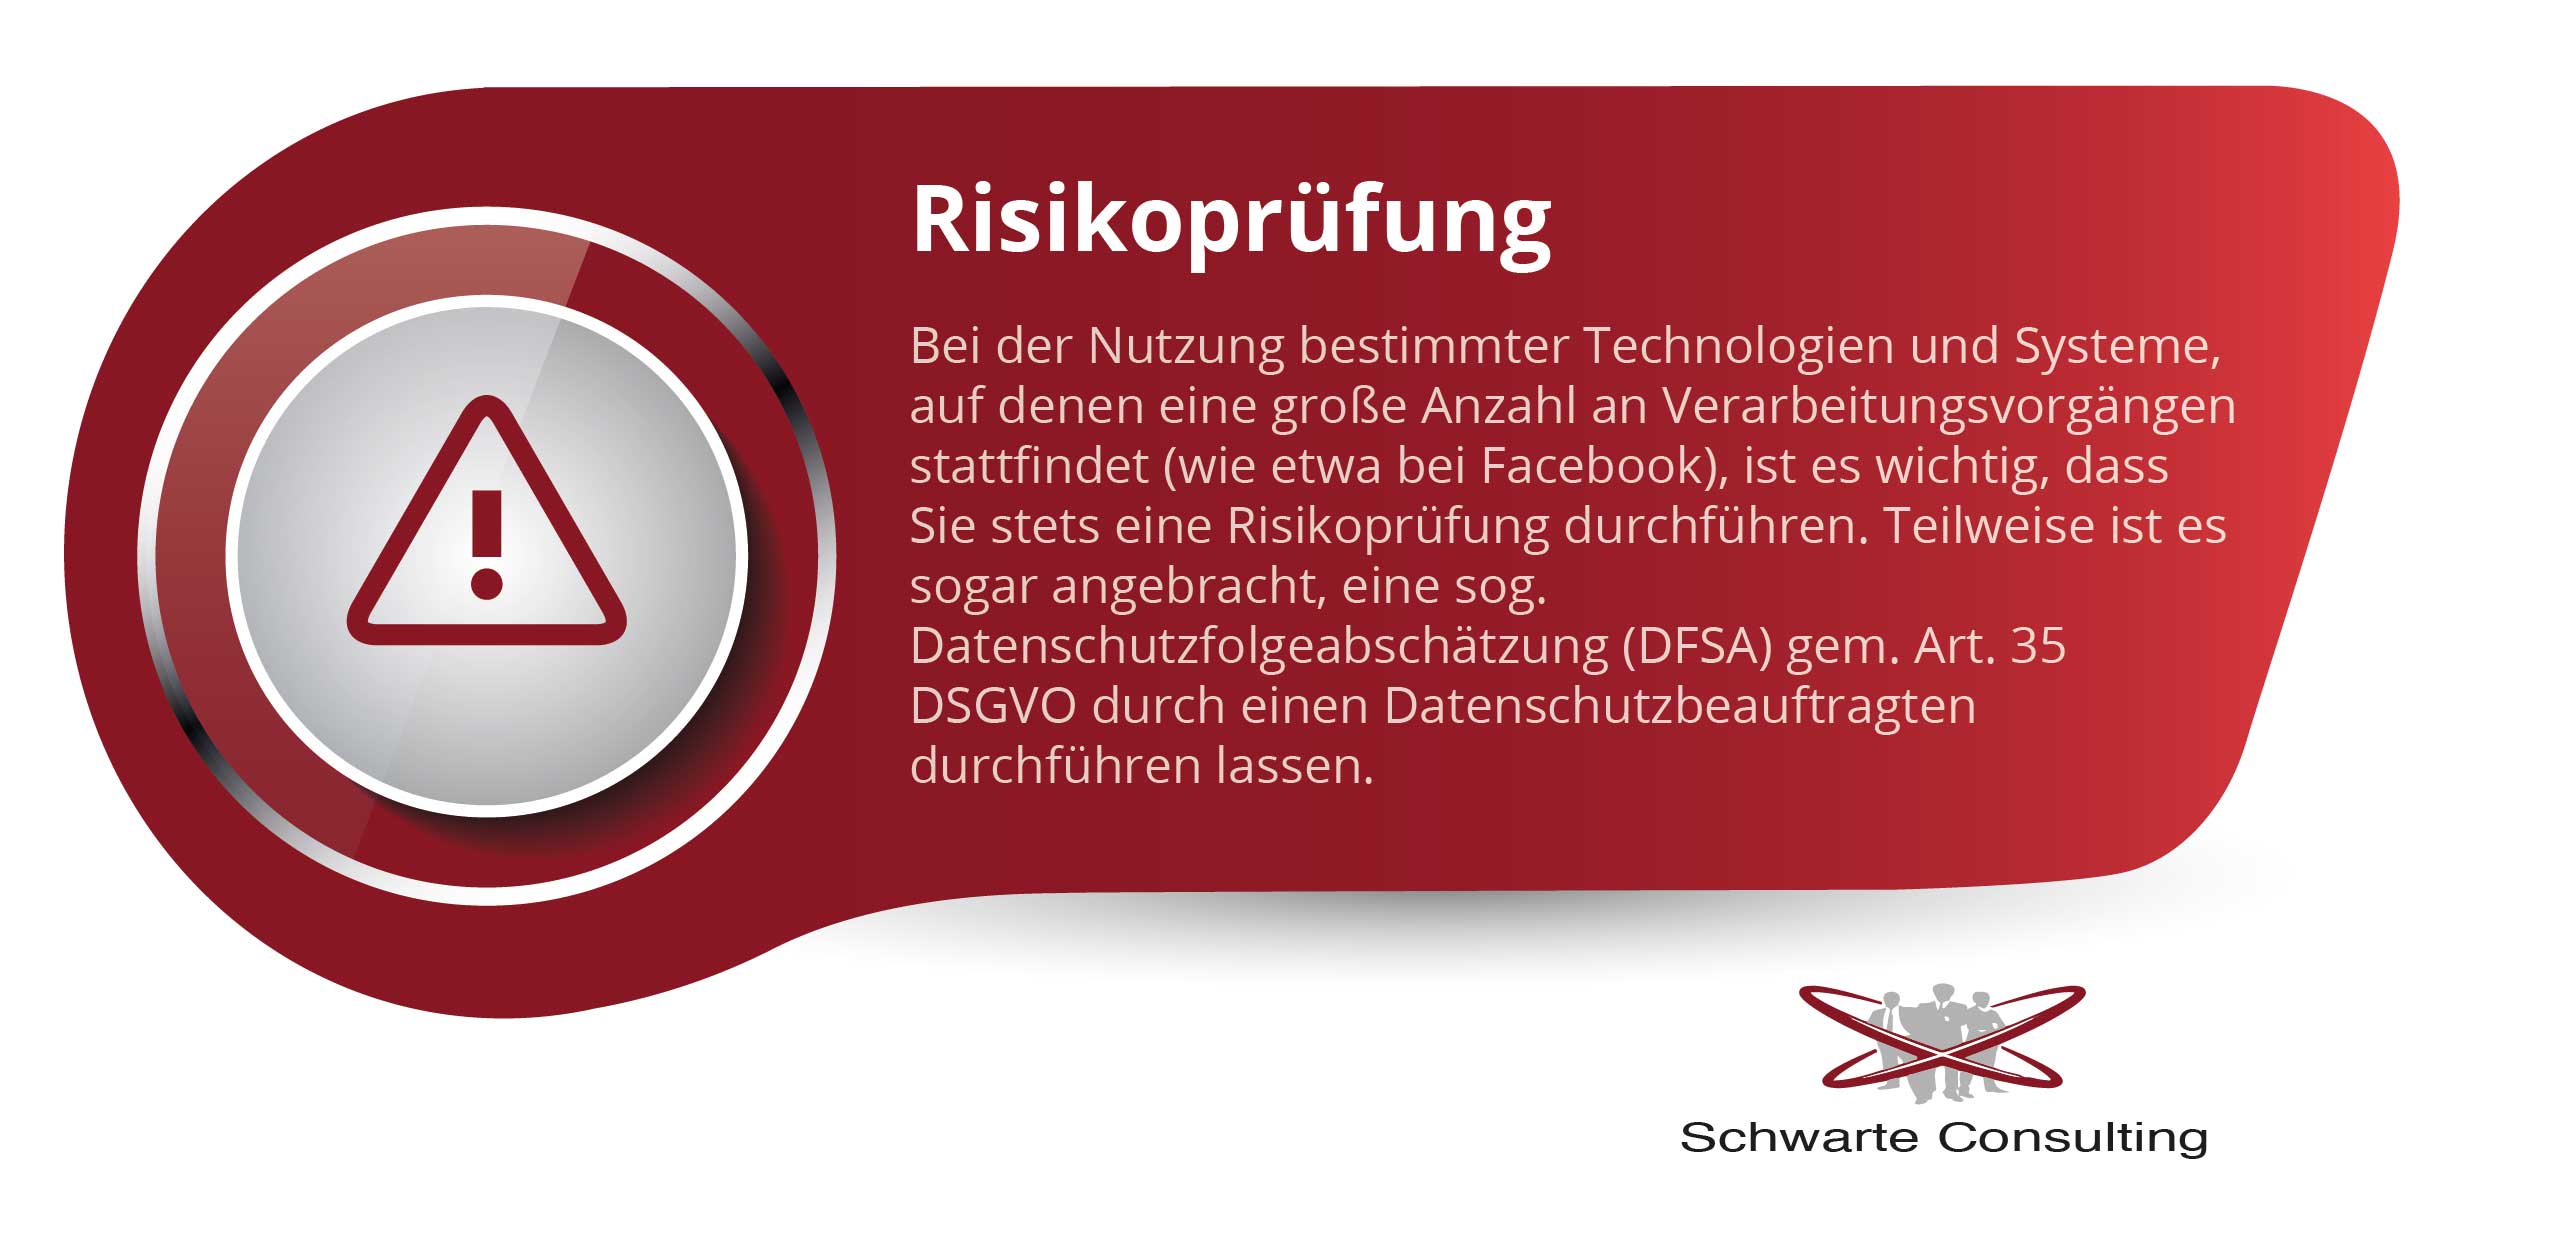 Risikoprüfung - Bei der Nutzung bestimmter Technologien und Systeme